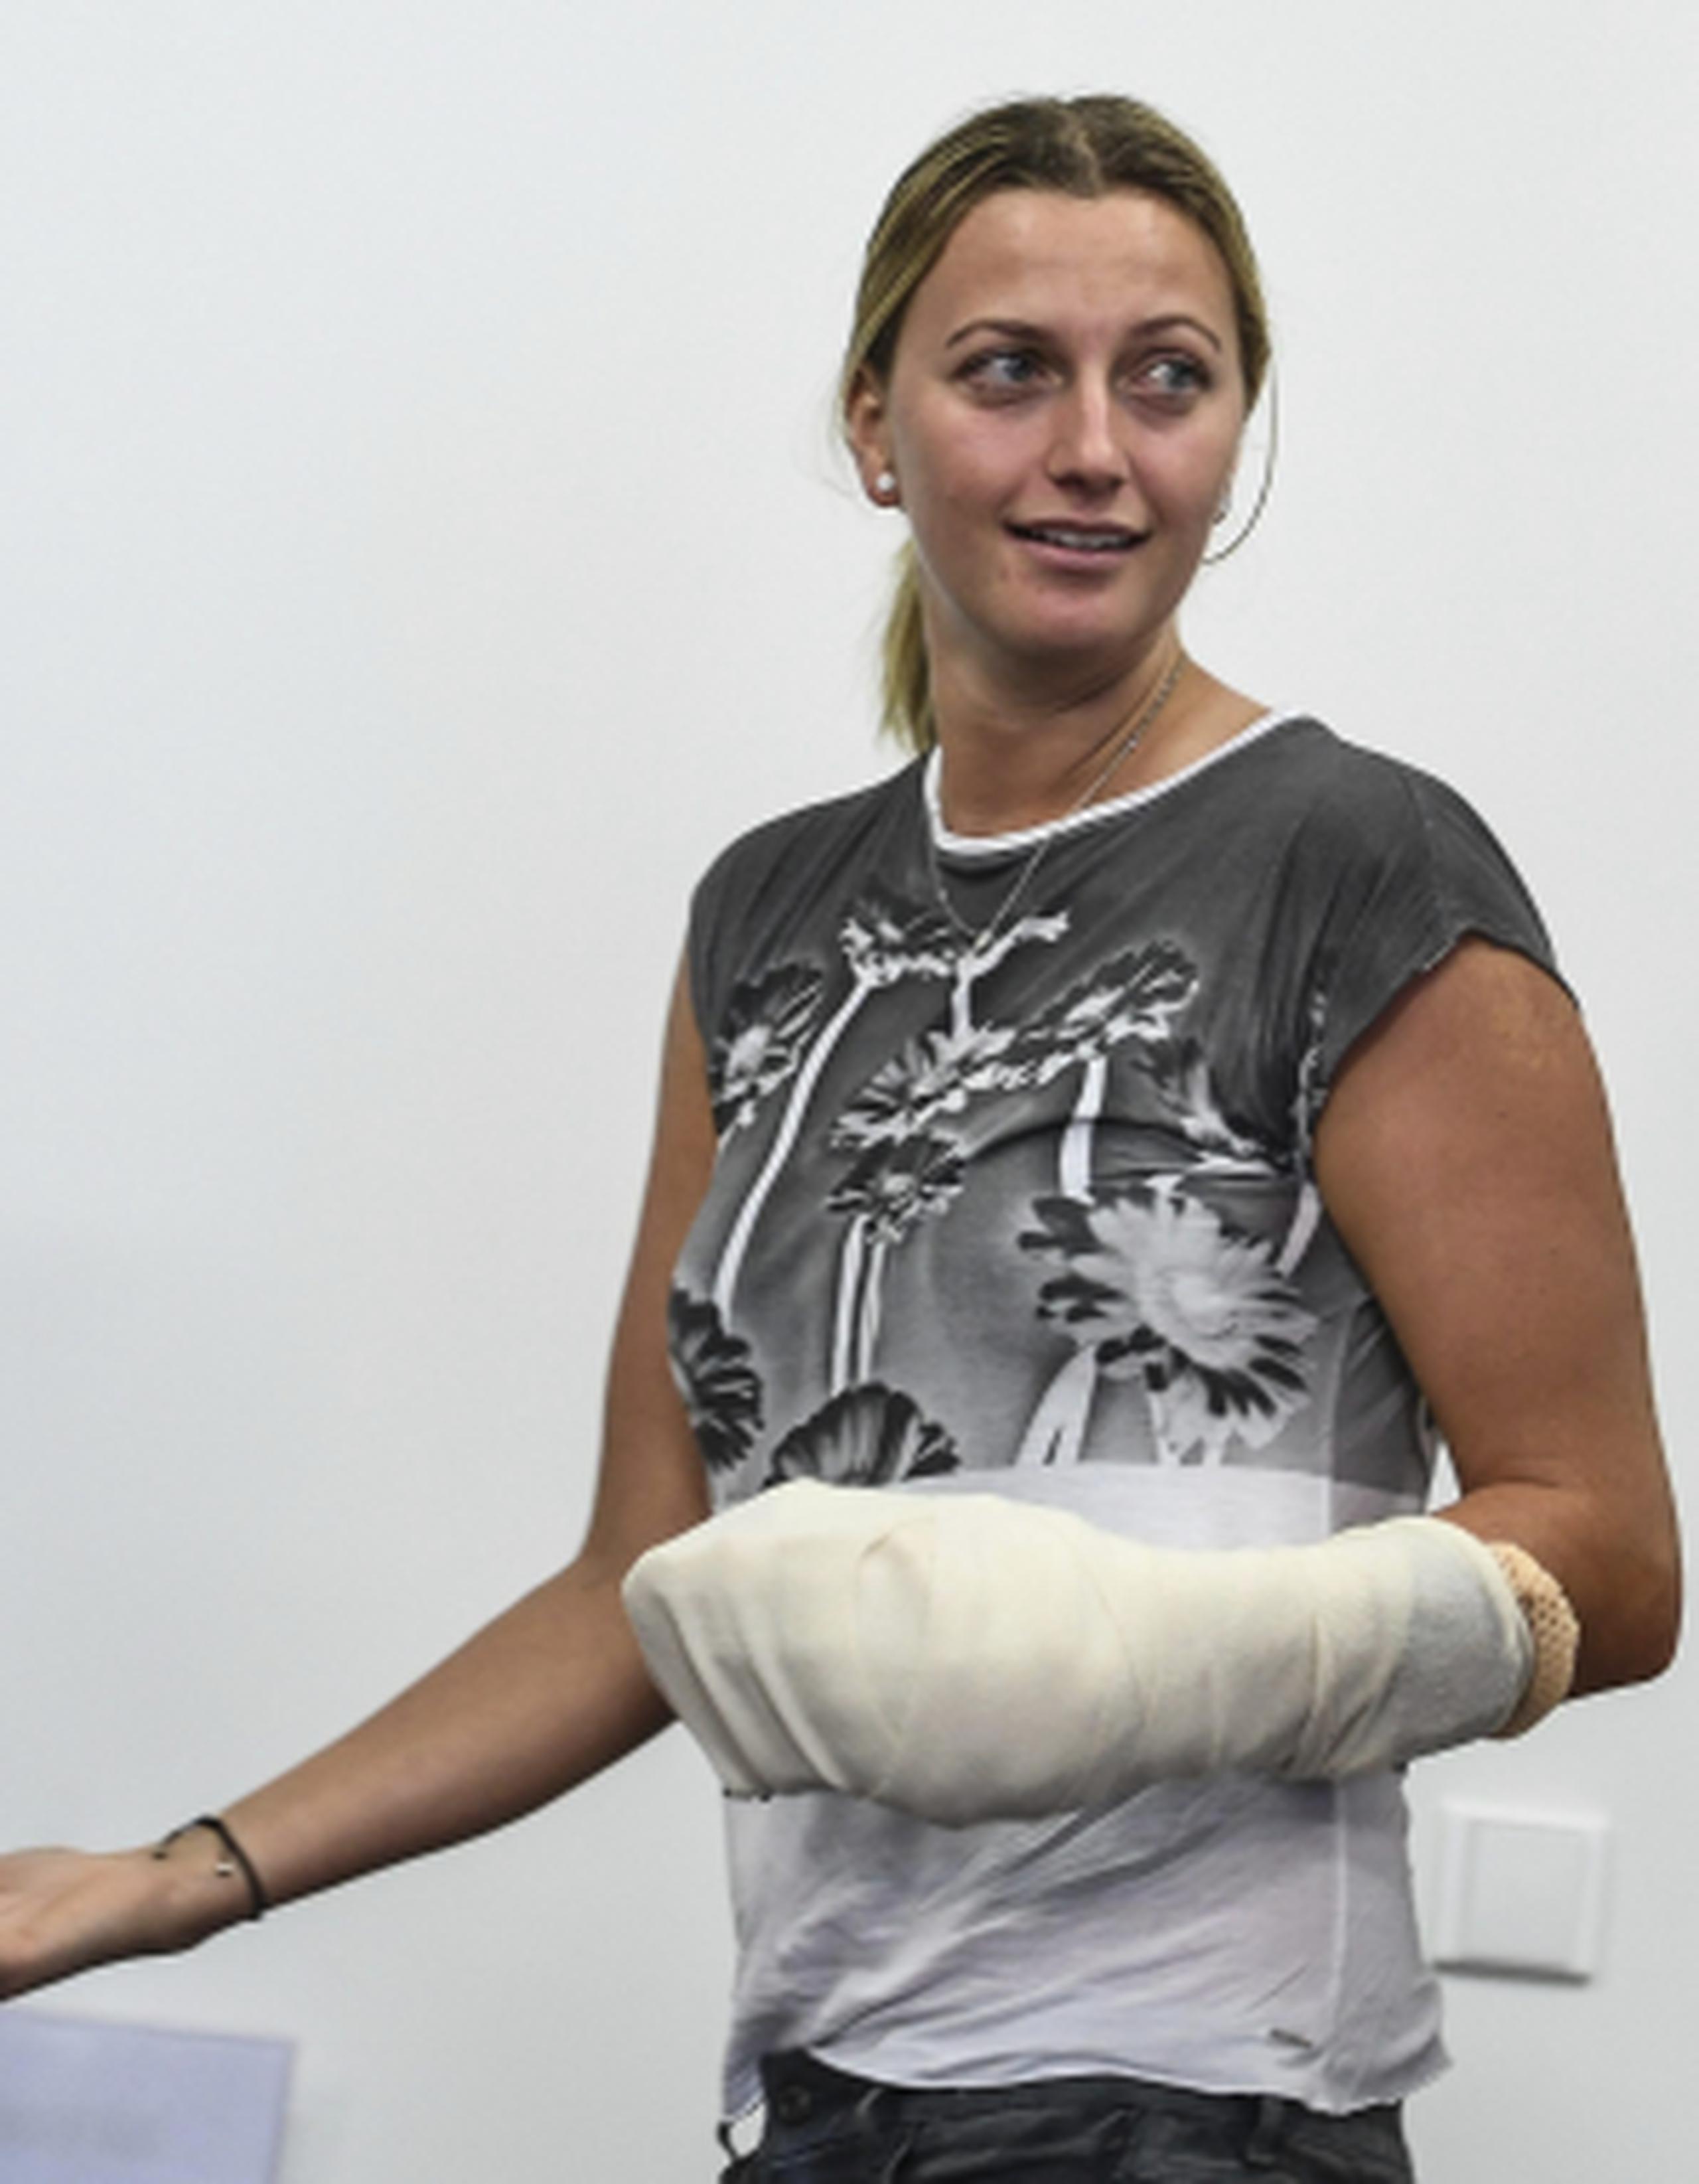 Kvitova estará al menos seis meses apartada de la competición, tras haber sido sometida a una operación en la mano izquierda para tratar las heridas de arma blanca que sufrió durante un ataque en su domicilio. (EFE / Filip Singer)
